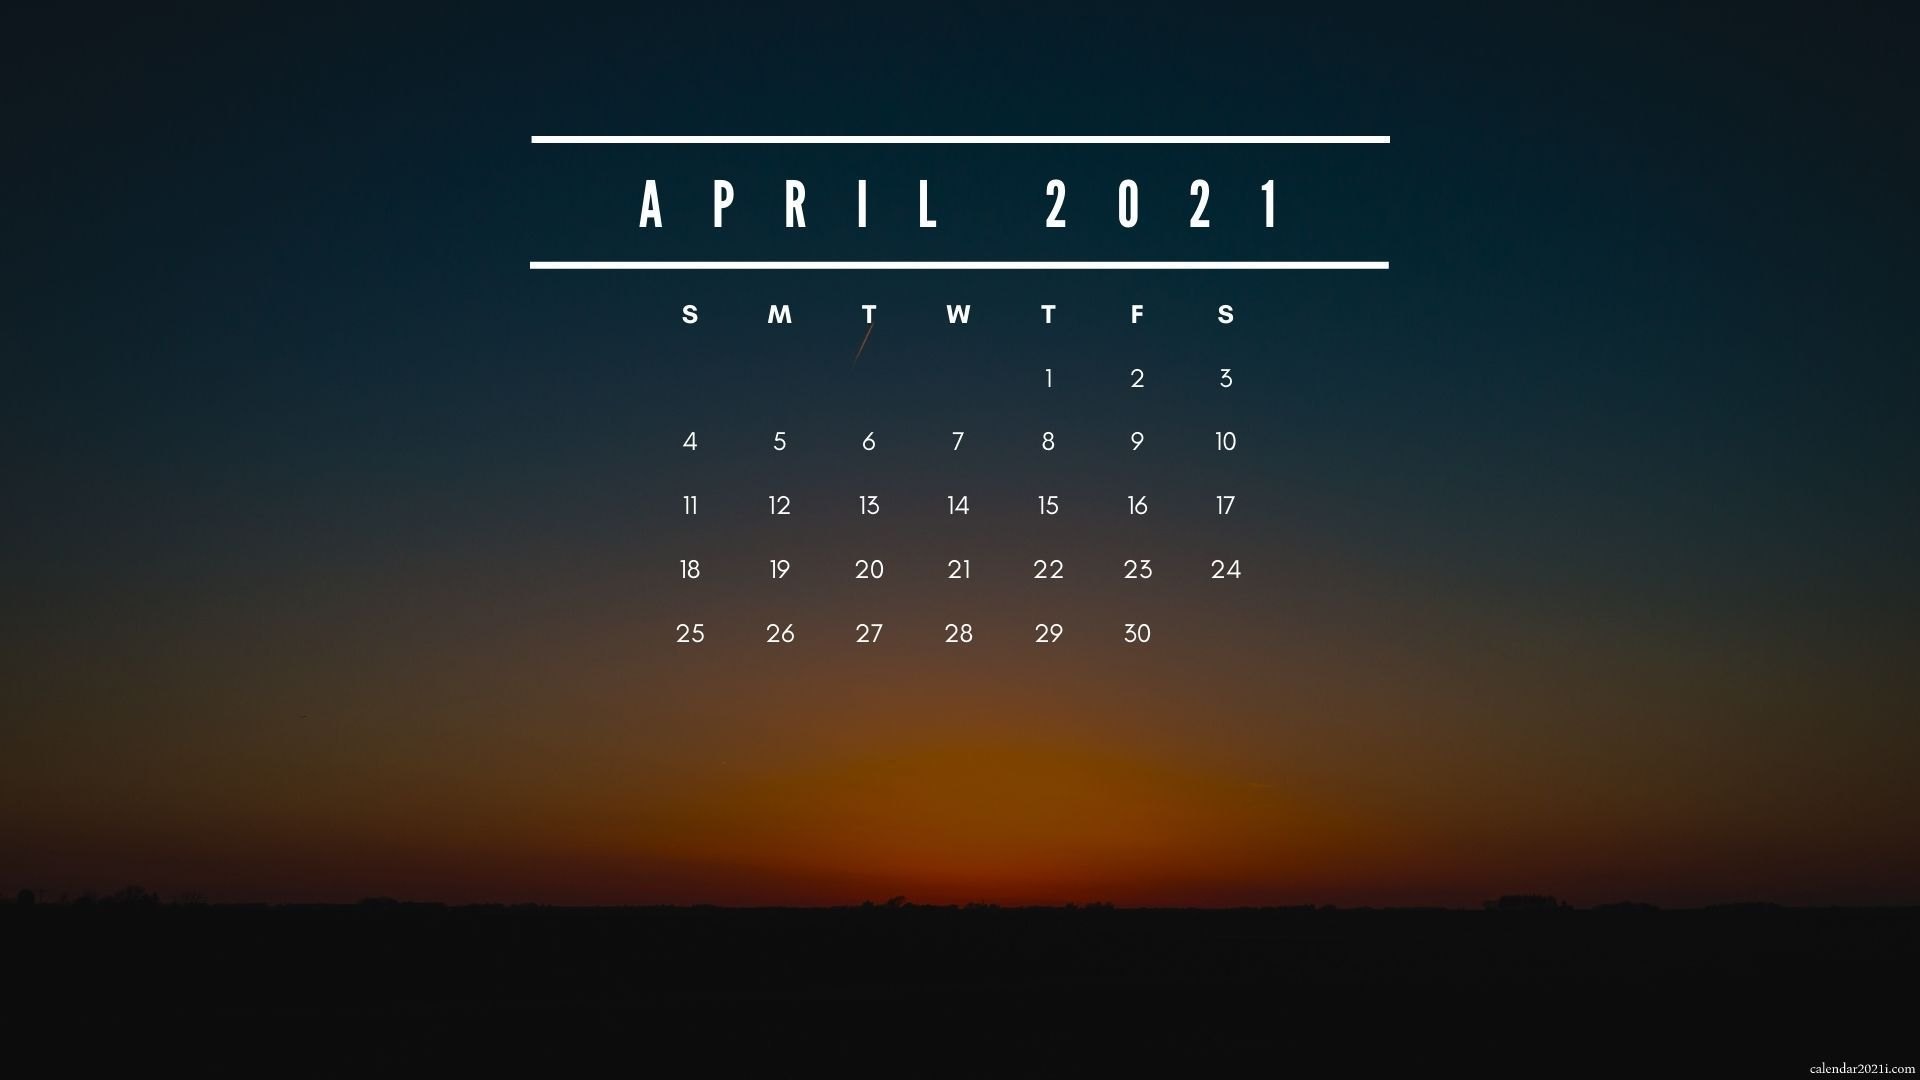 Календарь на экран андроид